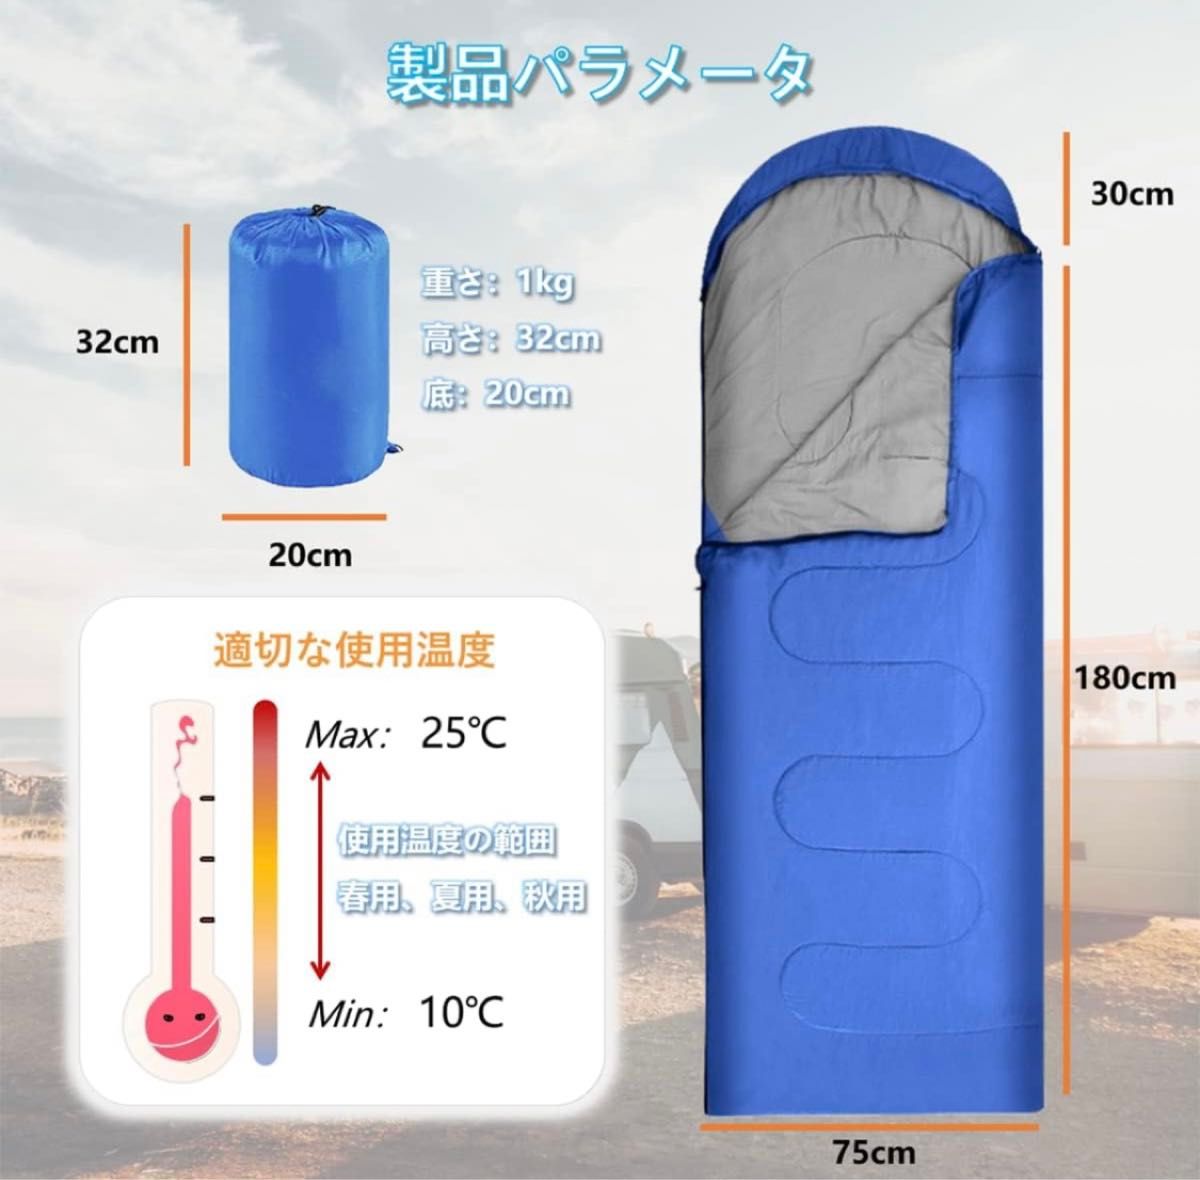 寝袋 封筒型 シュラフ 軽量 保温 耐寒 210T防水 収納袋付き 1kg 軽量 封筒 寝袋 寝袋 車中泊 登山